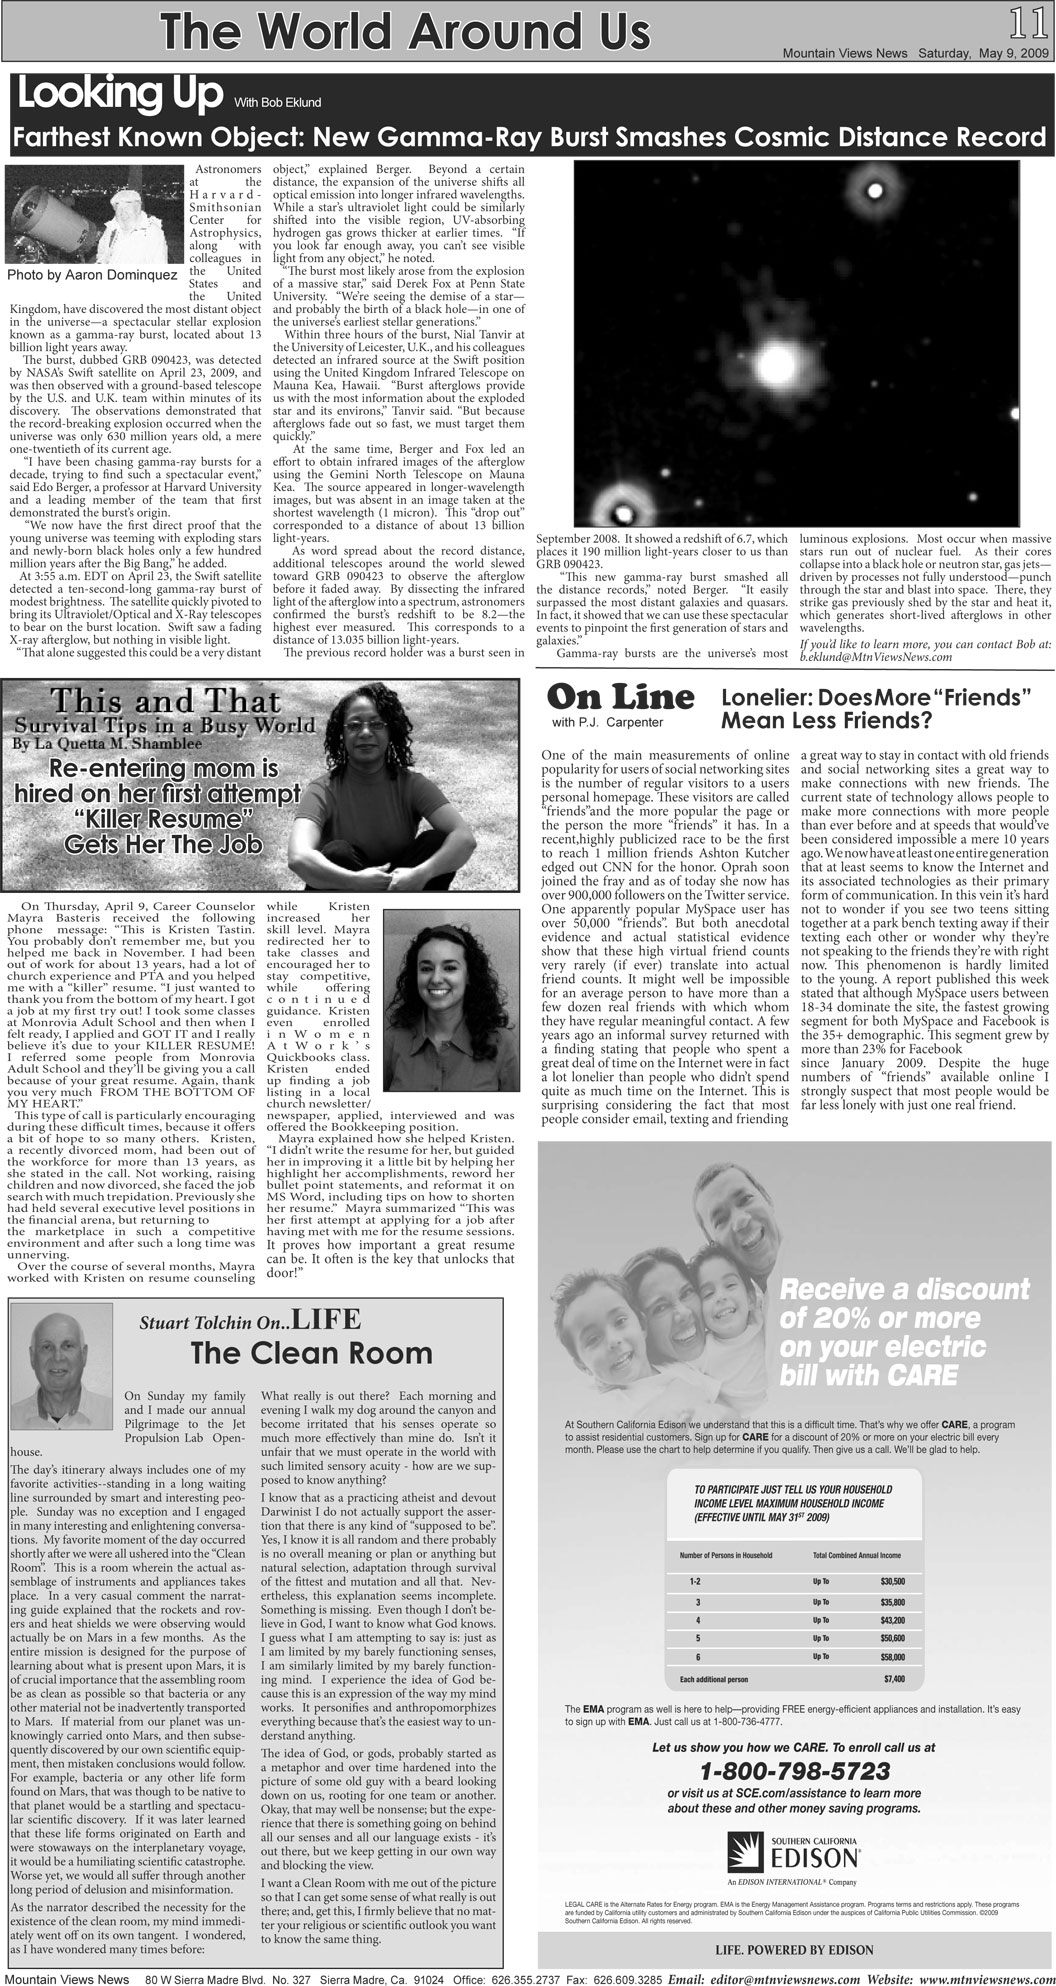 MVNews this week:  Page 11